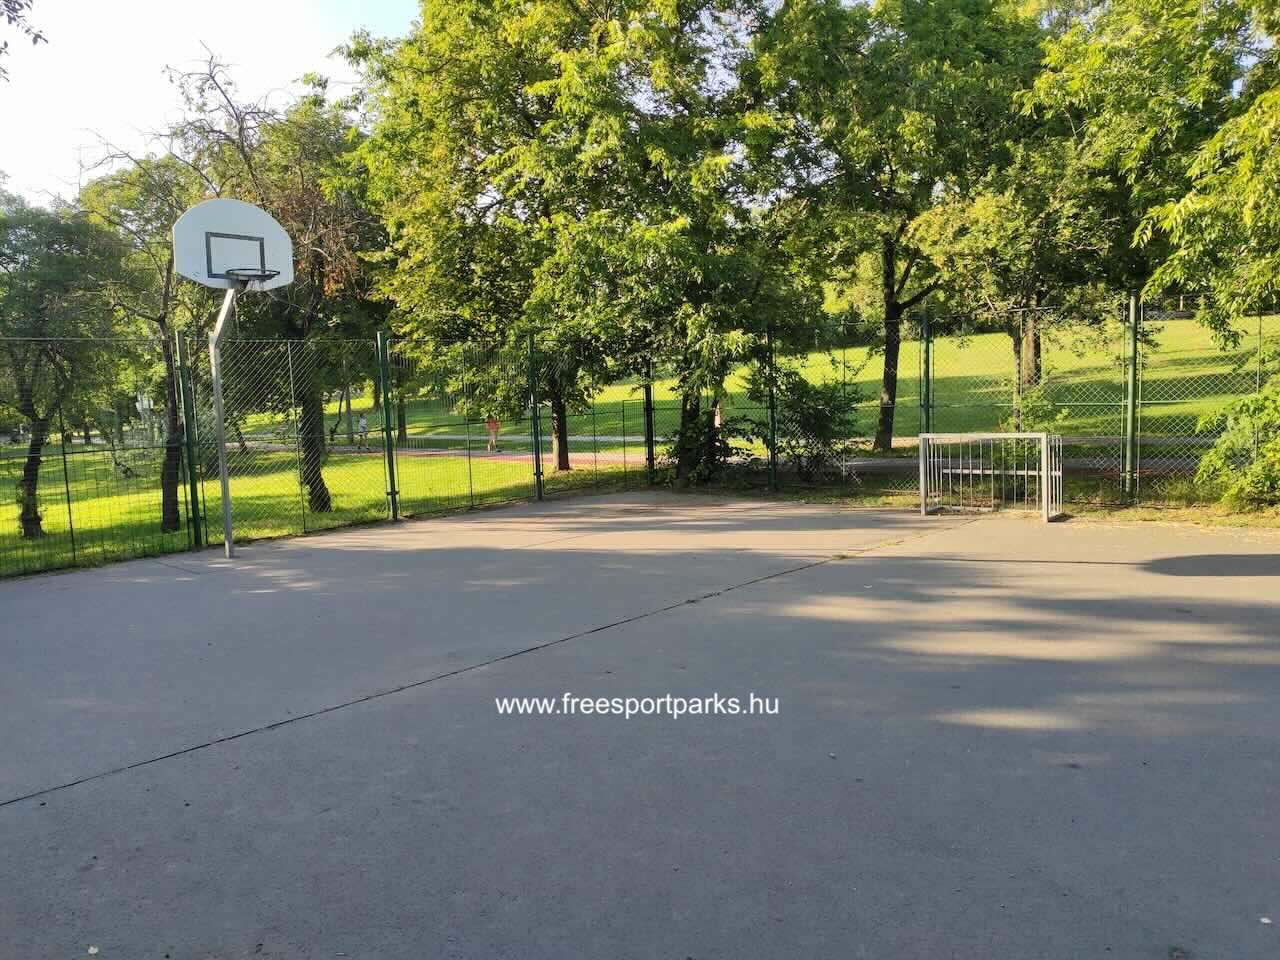 streetball palánk és kis focikapu, Óhegy Szabadidőpark, Kőbánya - Free Sport Parks térkép